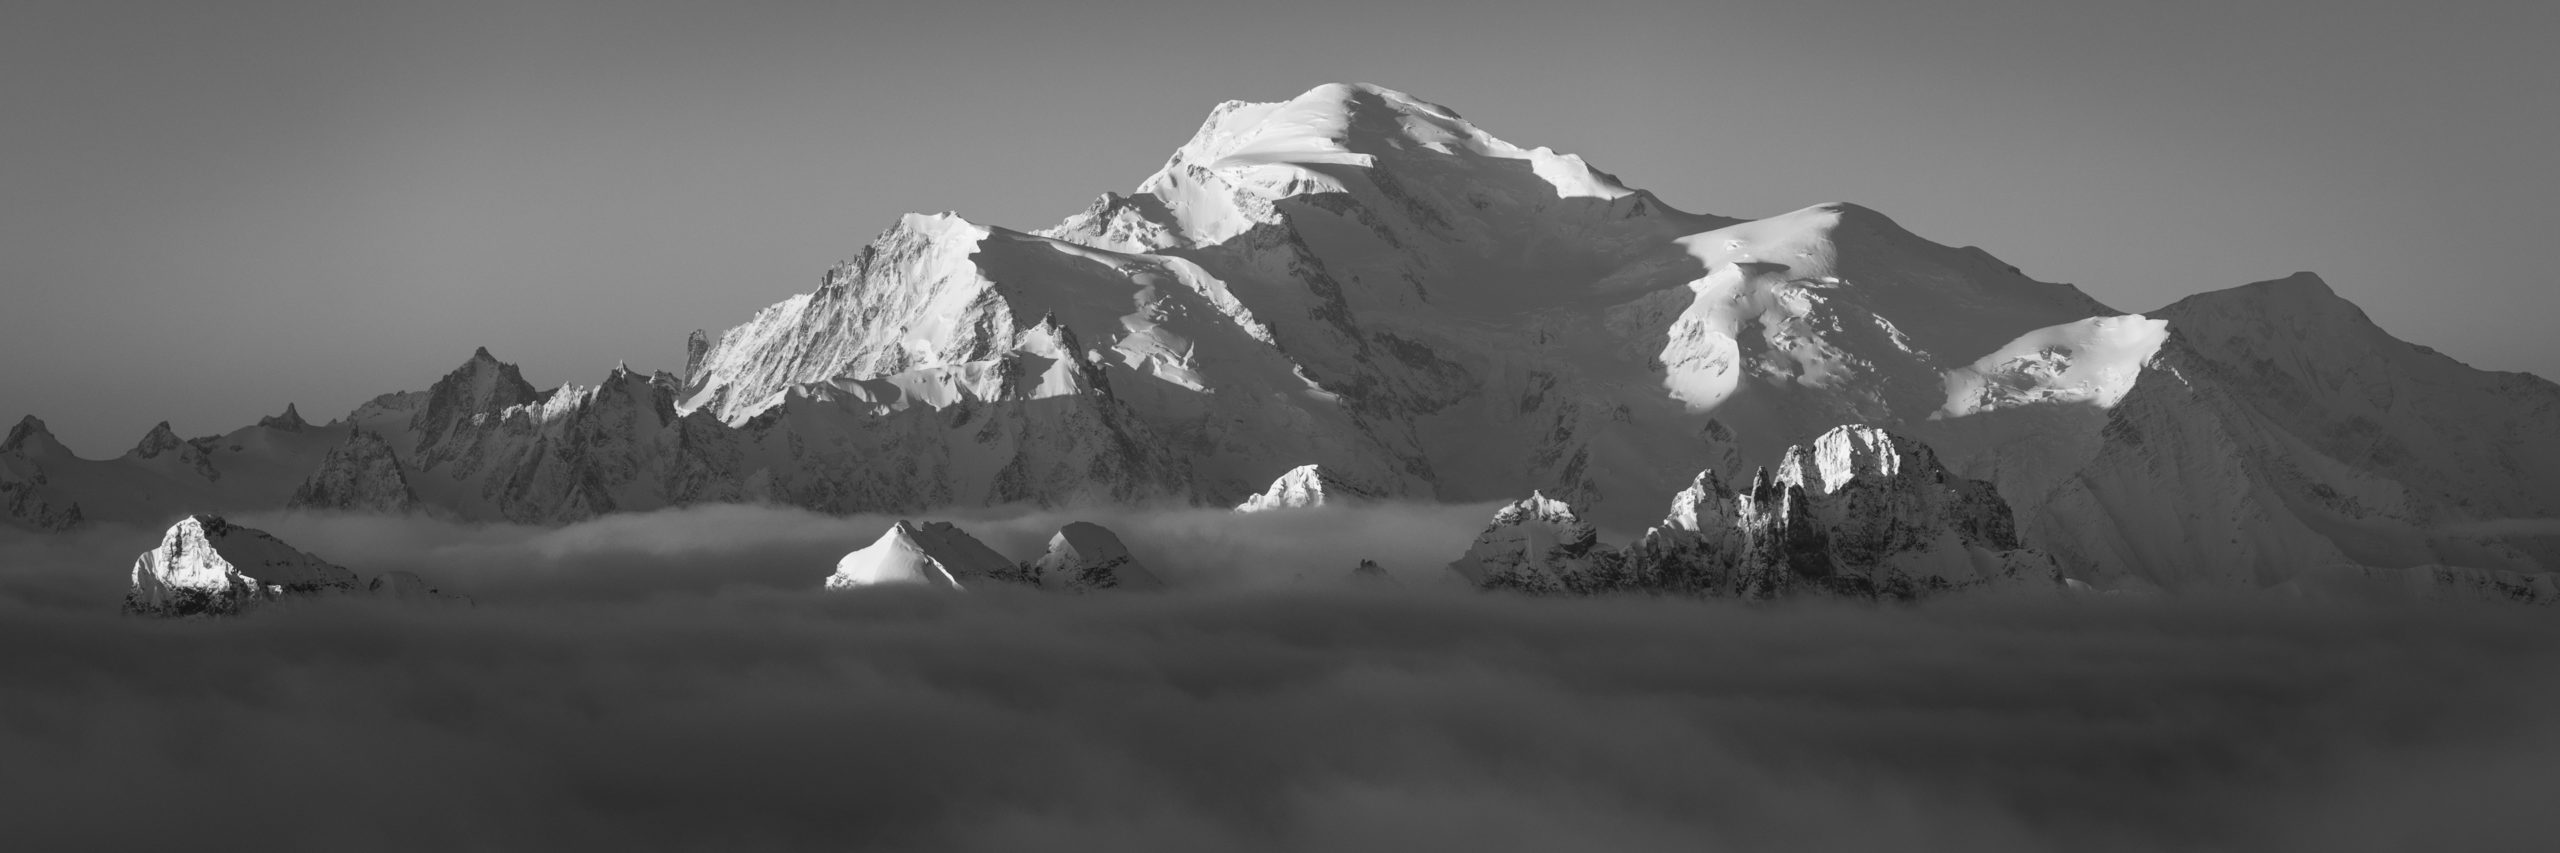 Panorama Mont-Blanc-Massiv - Schwarz-Weiß-Foto - Berg über dem Wolkenmeer